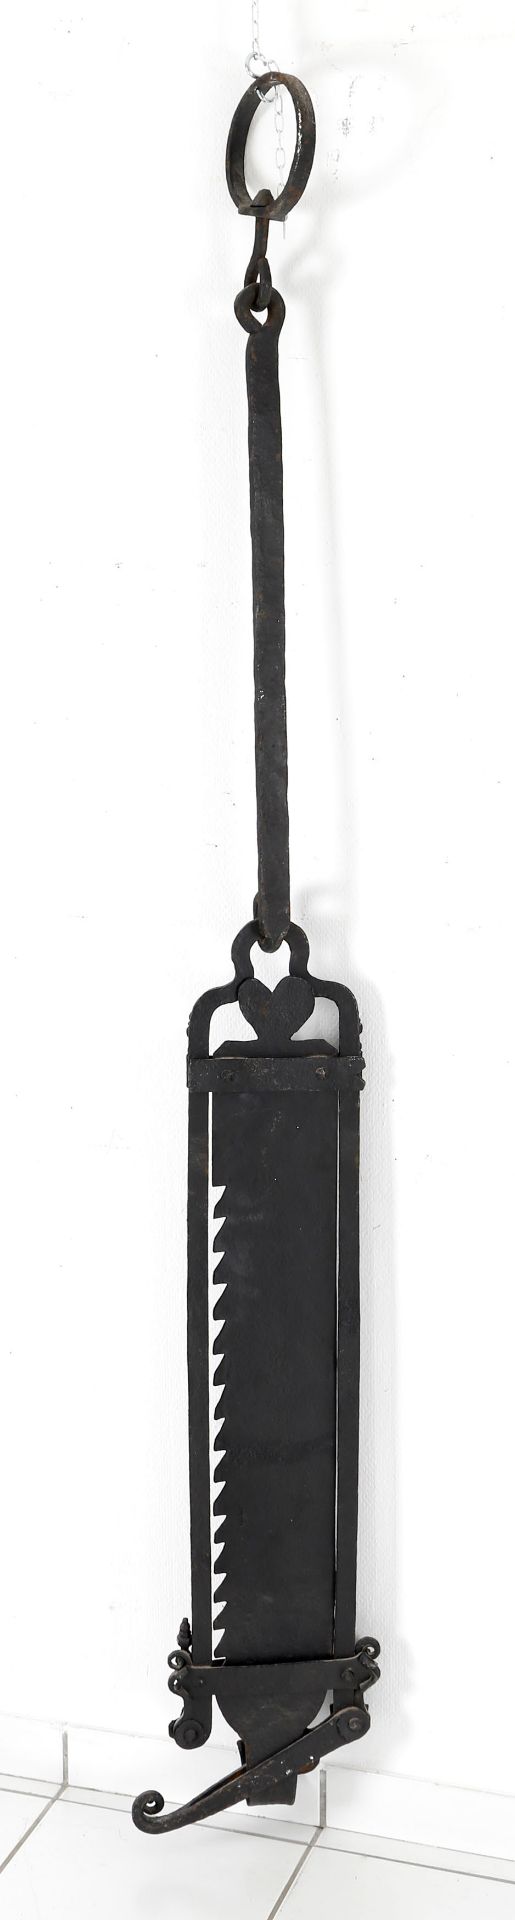 Große Eifeler Hal (Kesselaufhängung für offenen Kamin), 1. H. 19. Jh., ca. 1830